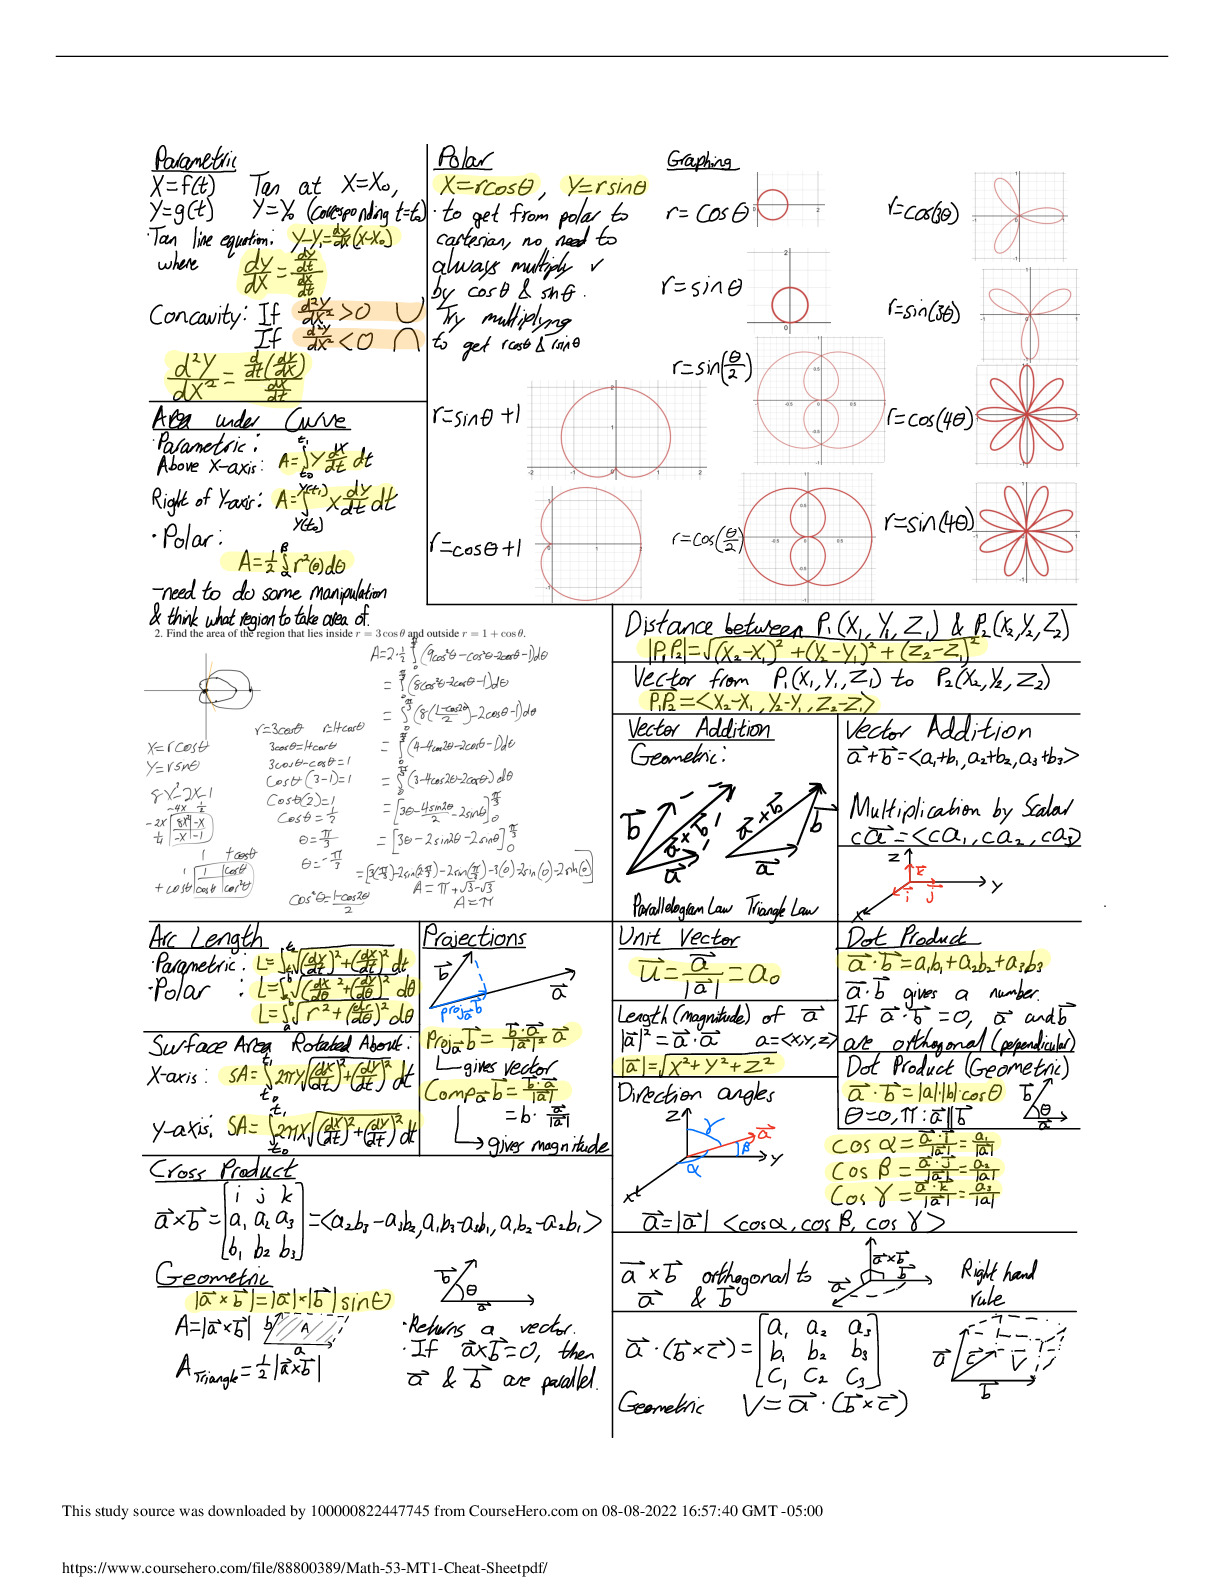 Math_53_MT1_Cheat_Sheet.pdf